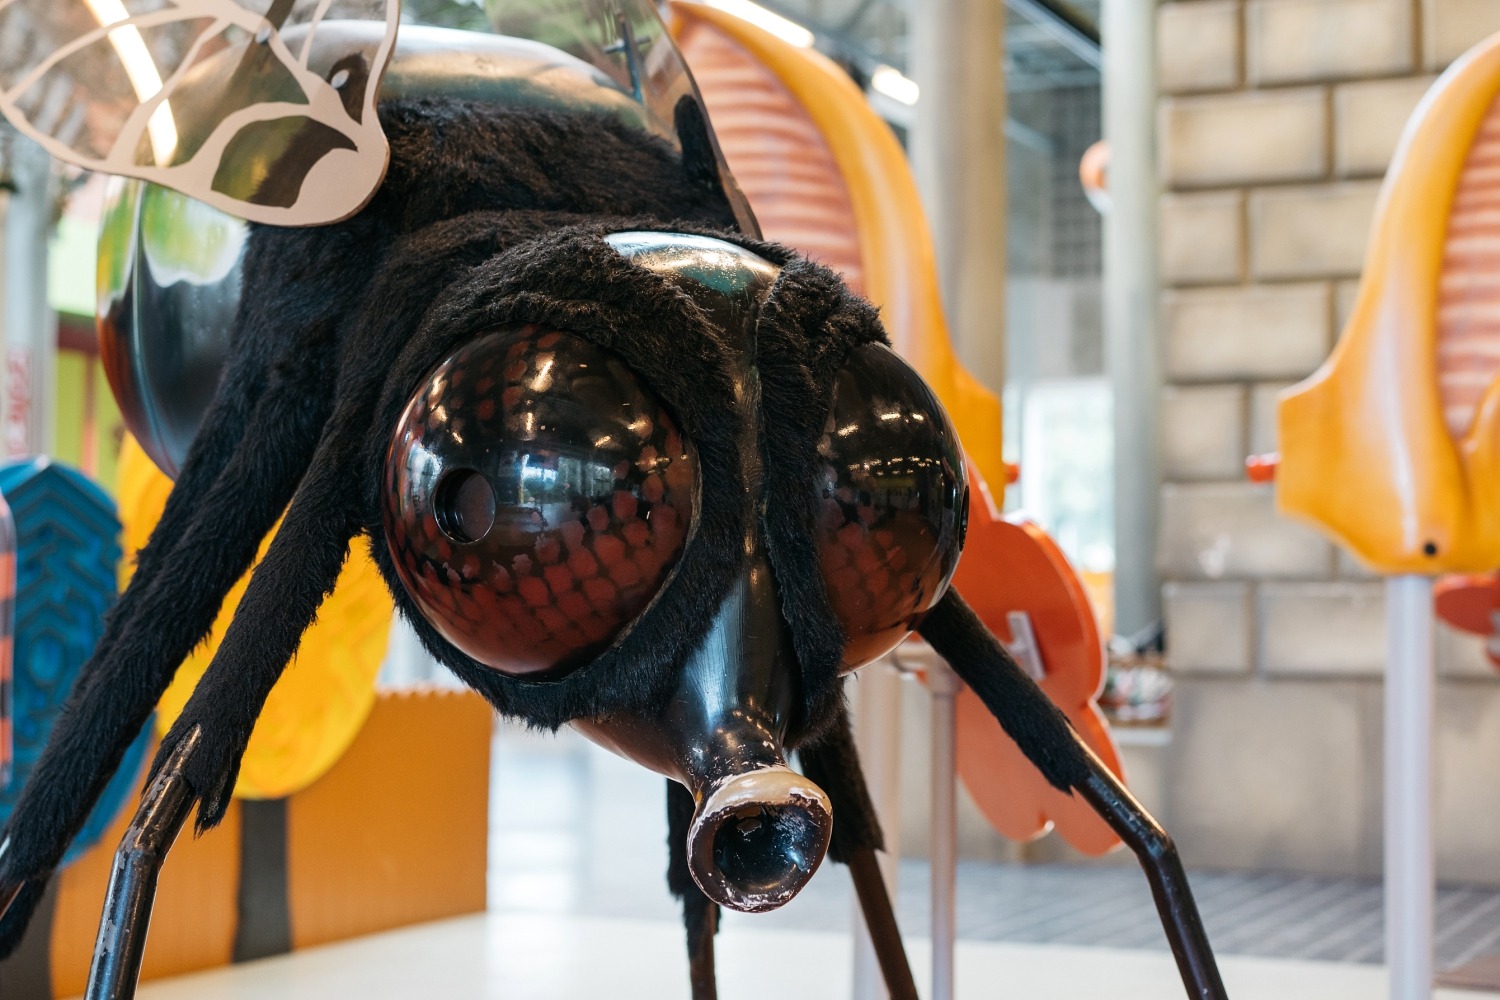 Technopolis Malines Mechelen parc scientifique expérience sortie en famille excursion Province d' Anvers Insectopia Musée Exposition
